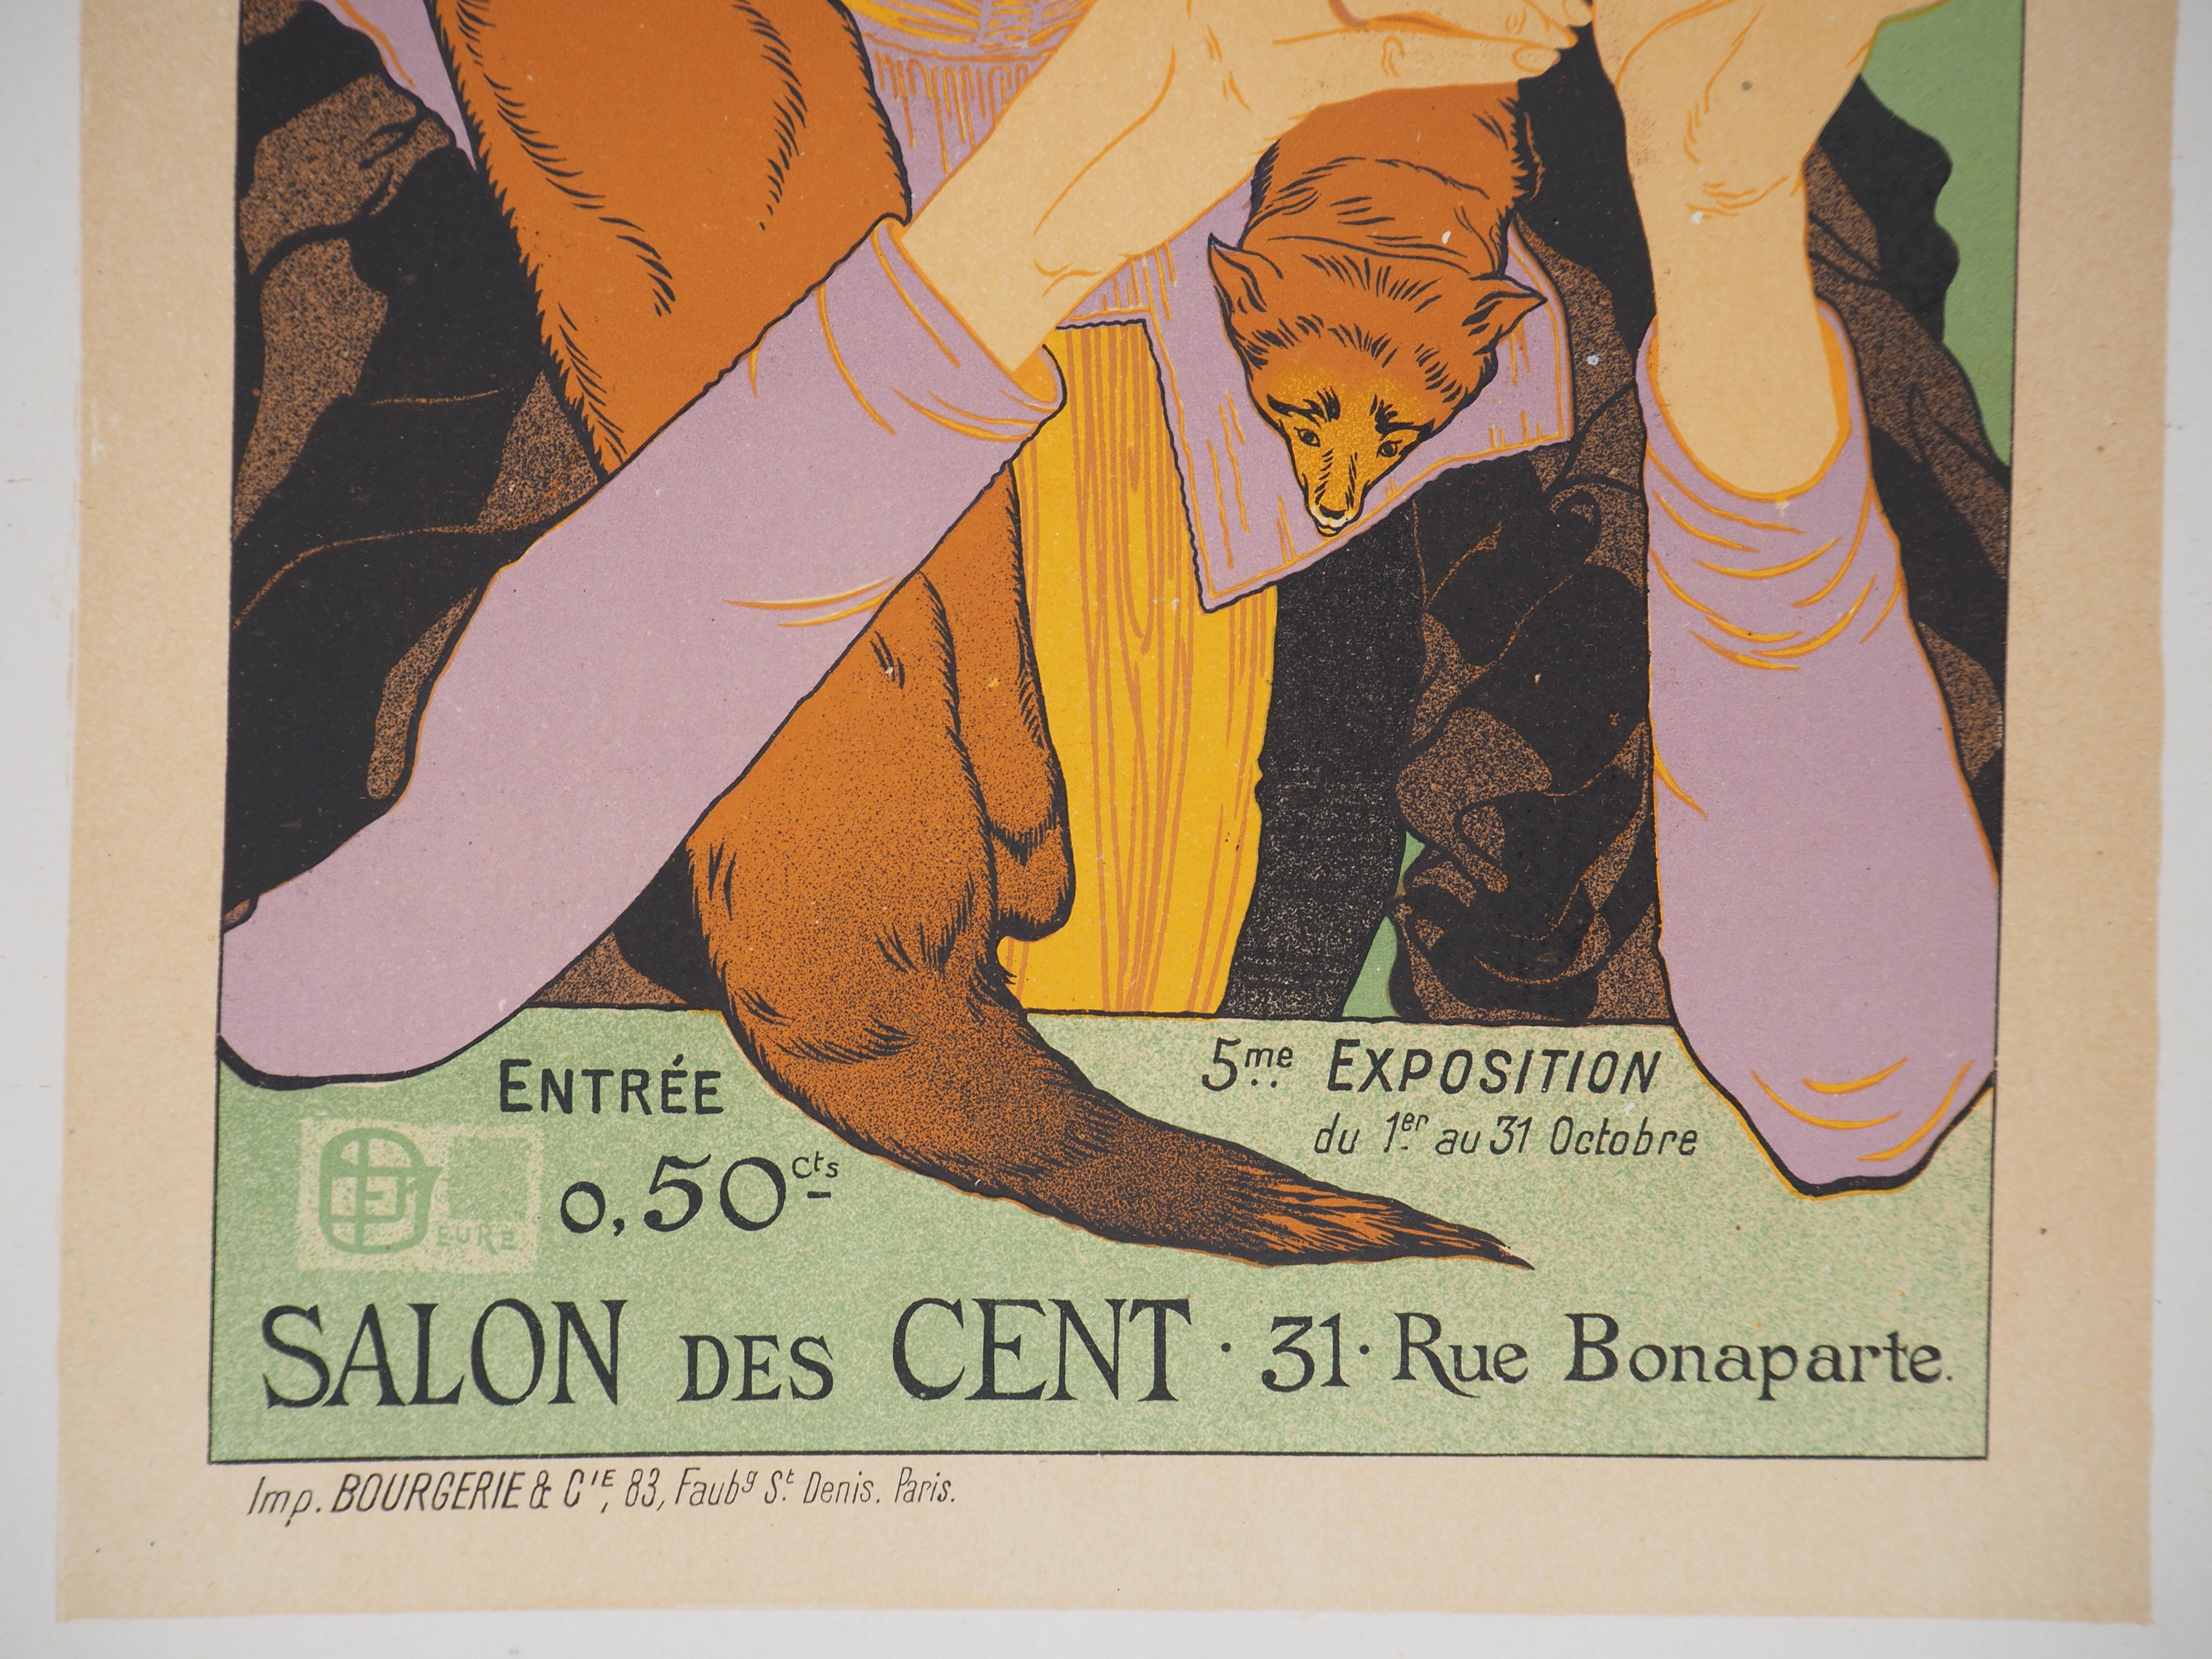 Salon des Cent - Lithograph (Les Maîtres de l'Affiche), 1895 - Art Nouveau Print by Georges De Feure